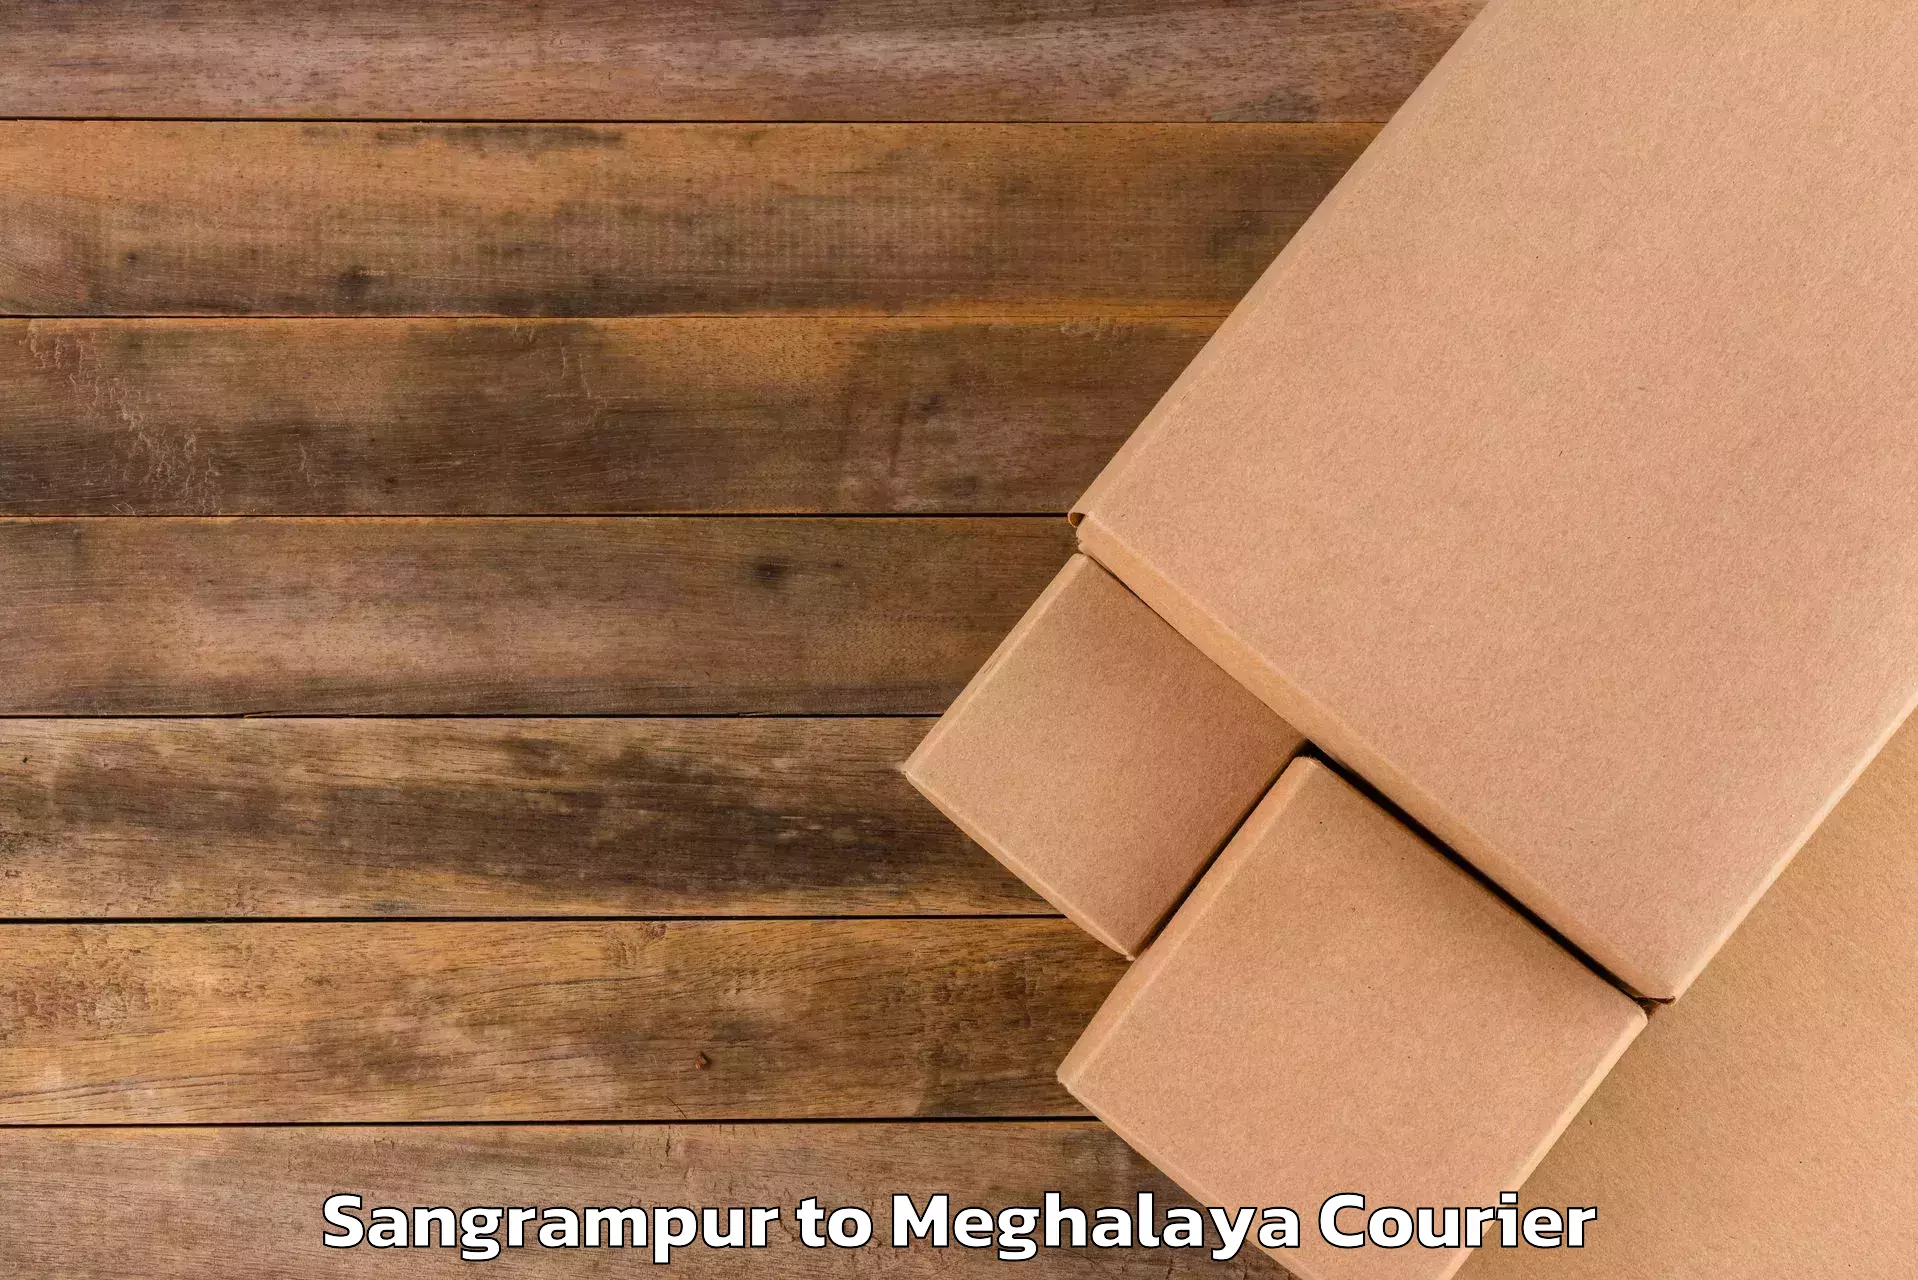 Luggage shipment tracking Sangrampur to Jowai